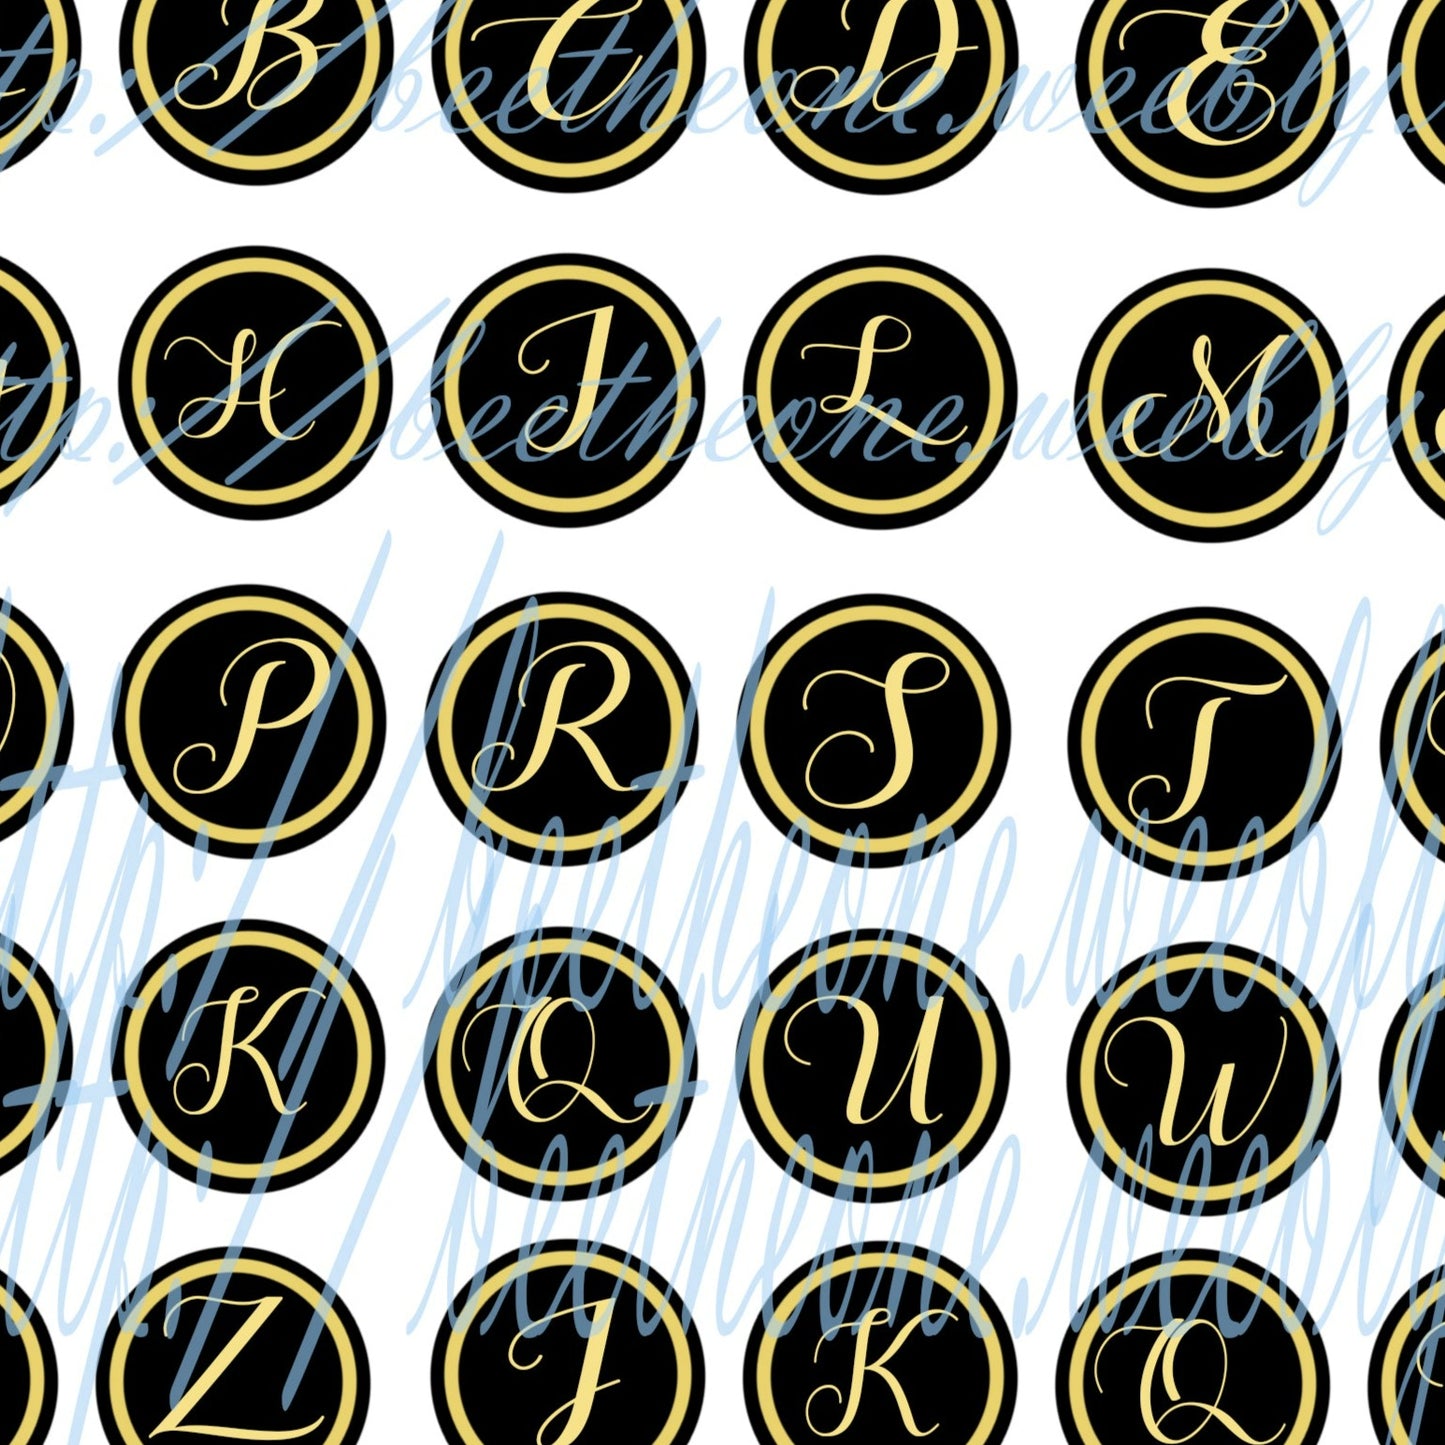 Images digitales pour Cabochons - Alphabet (26 lettres) - 48 images x 25 mm - A télécharger et imprimer